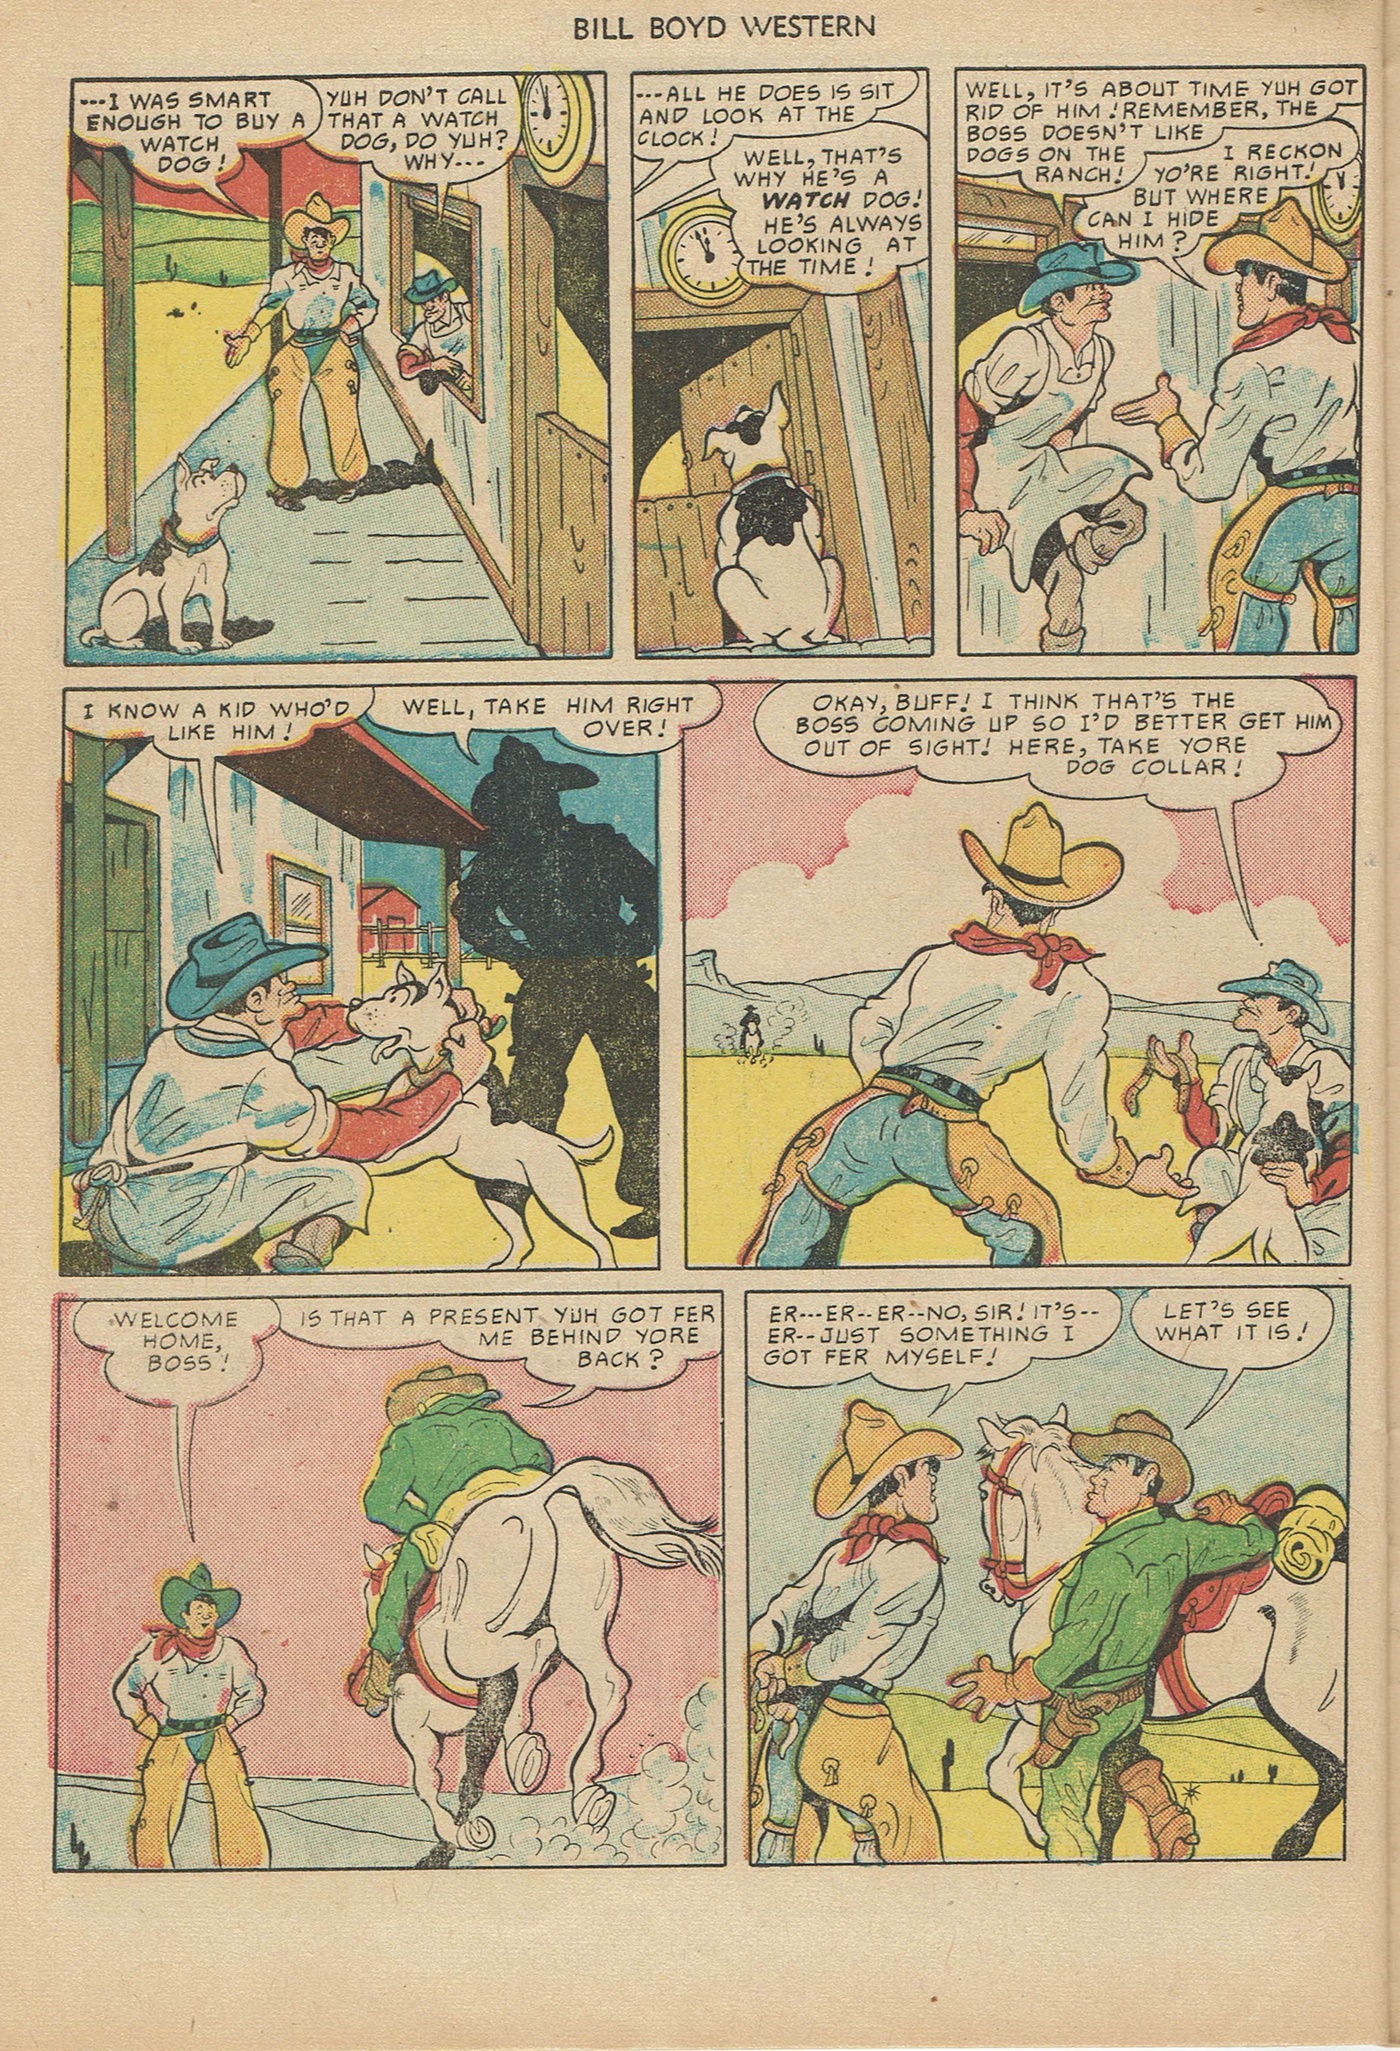 Read online Bill Boyd Western comic -  Issue #6 - 32